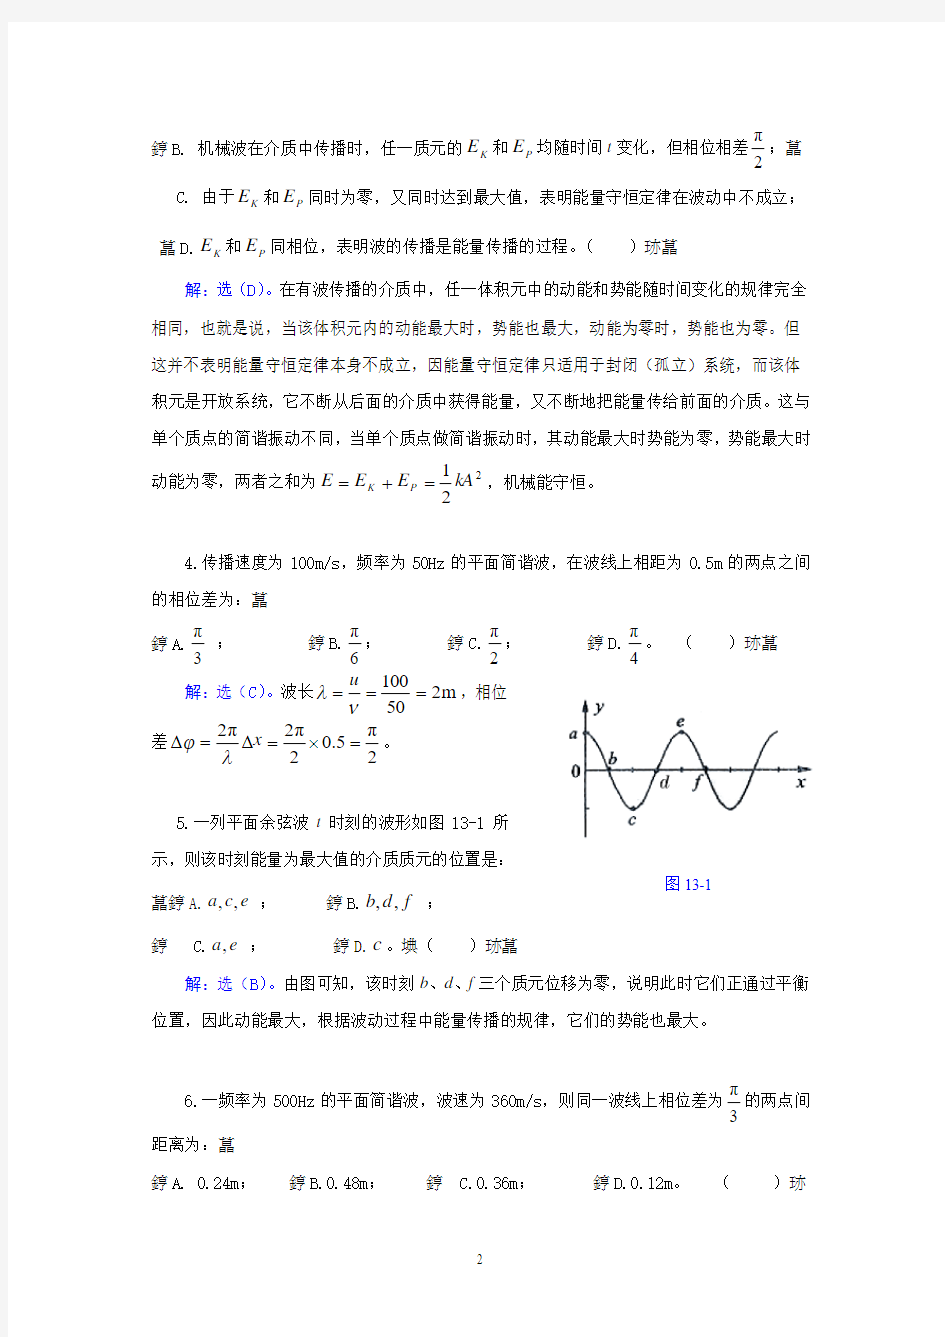 武汉纺织大学 大学物理 机械波